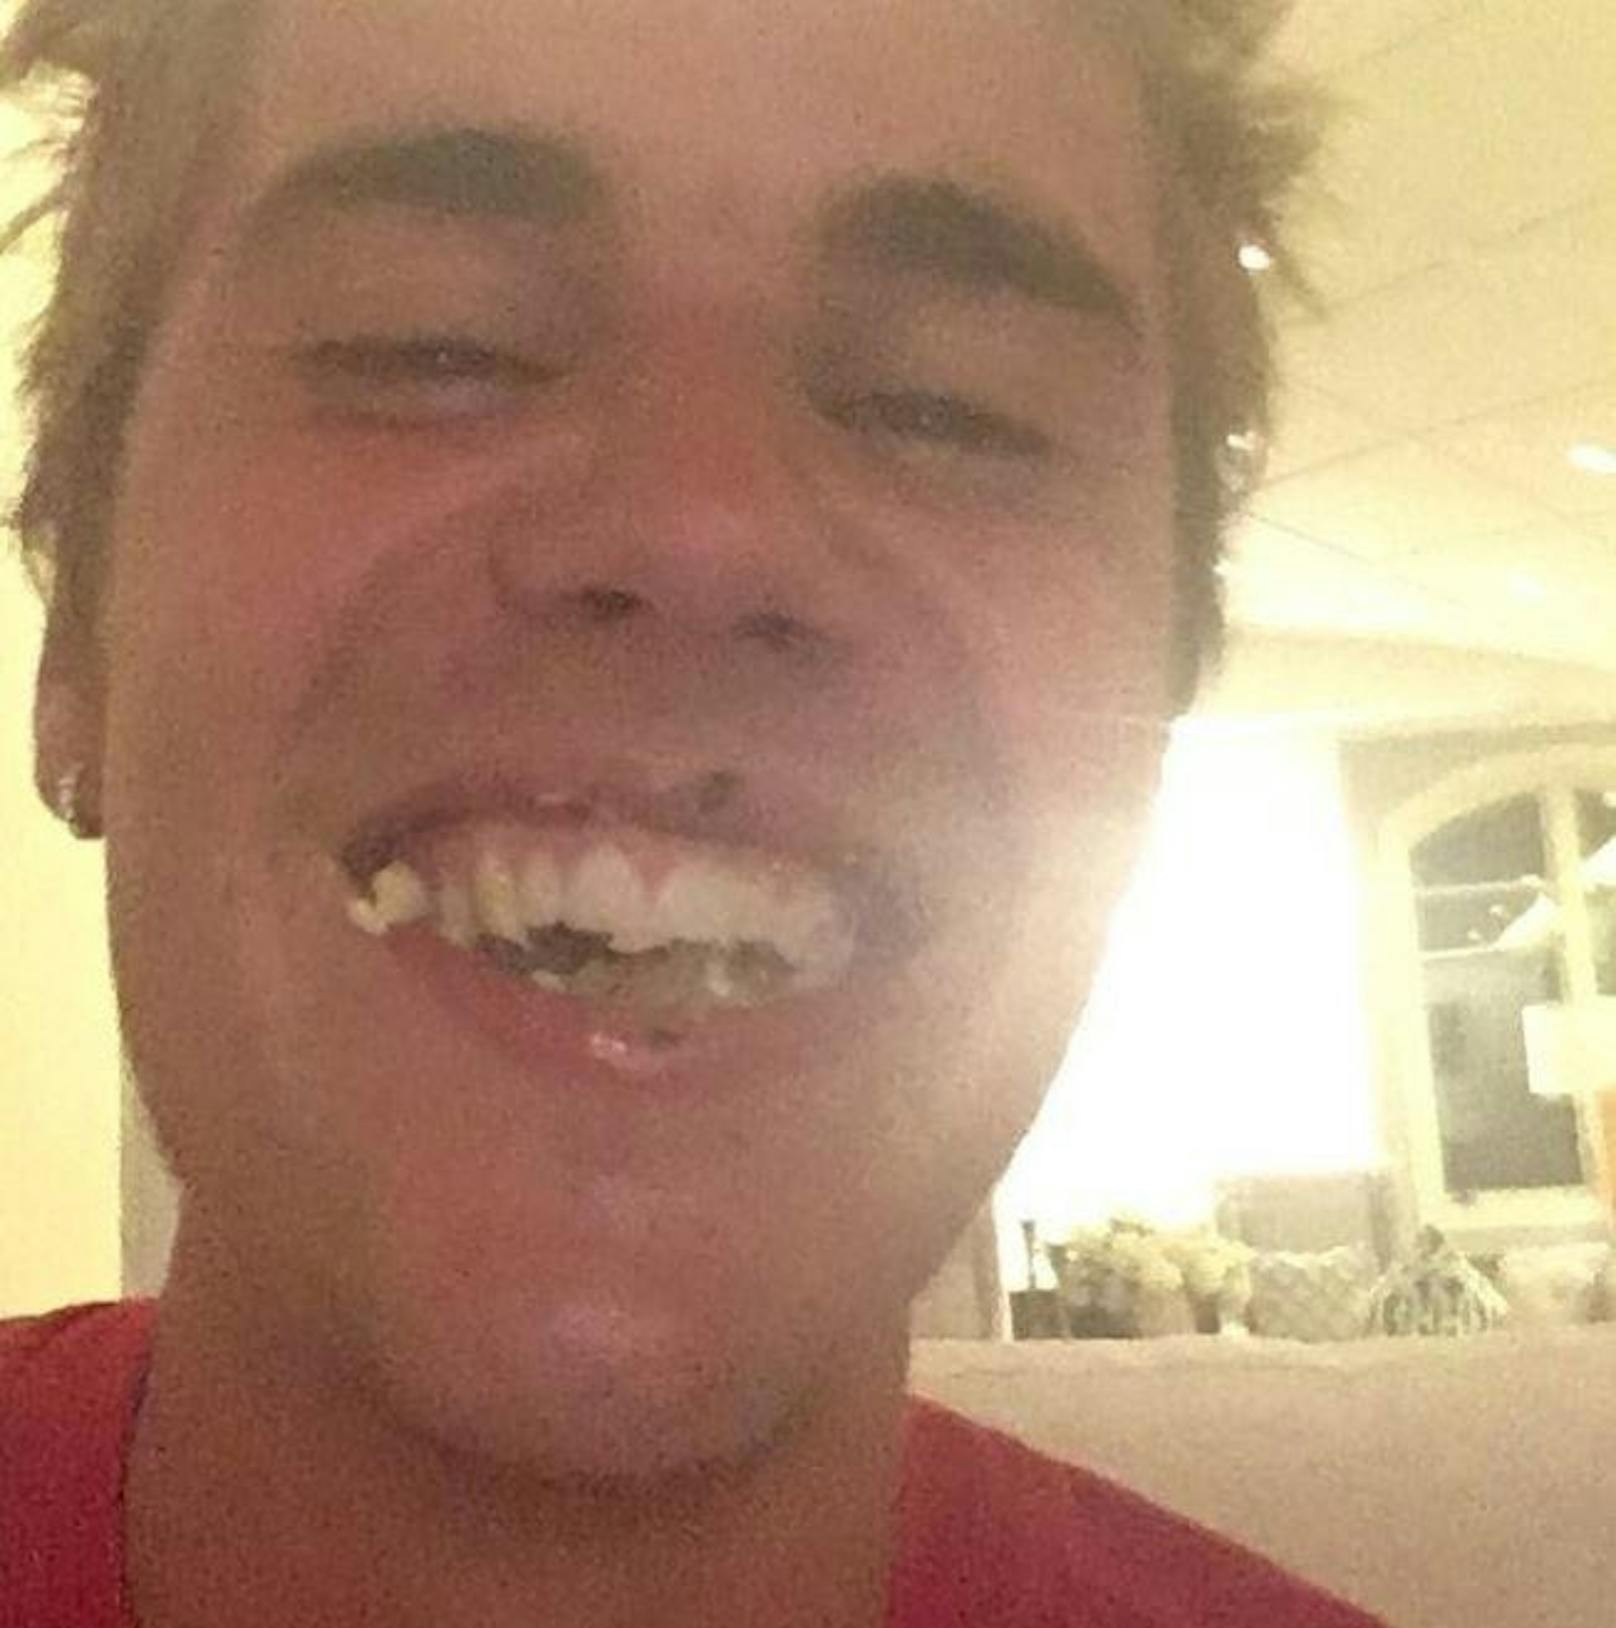 12.09.2017: Obwohl dieses Foto von Justin Bieber ziemlich grauslich ist, wurde dieses Bild innerhalb von acht Stunden über eine Million Mal geliked.